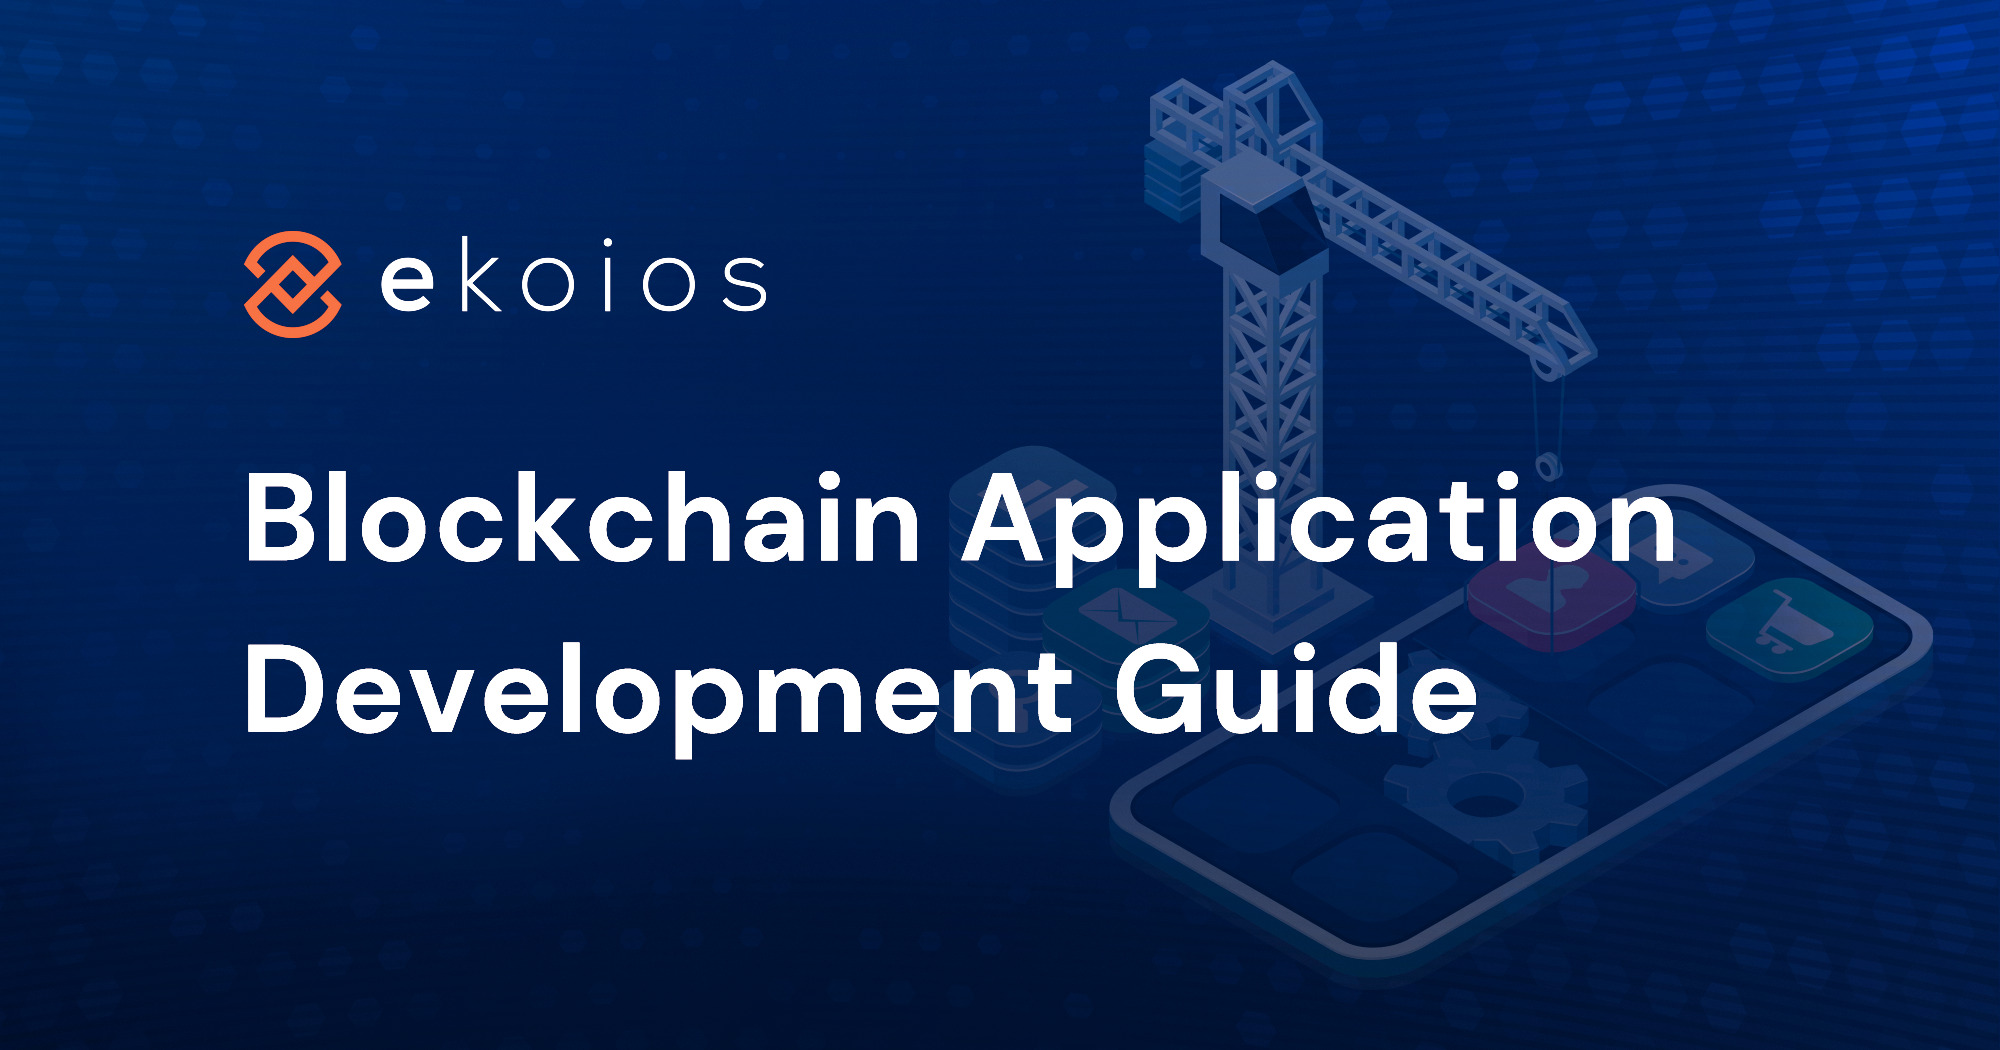 ブロックチェーンアプリケーション開発ガイド：技術、コスト、プロセス